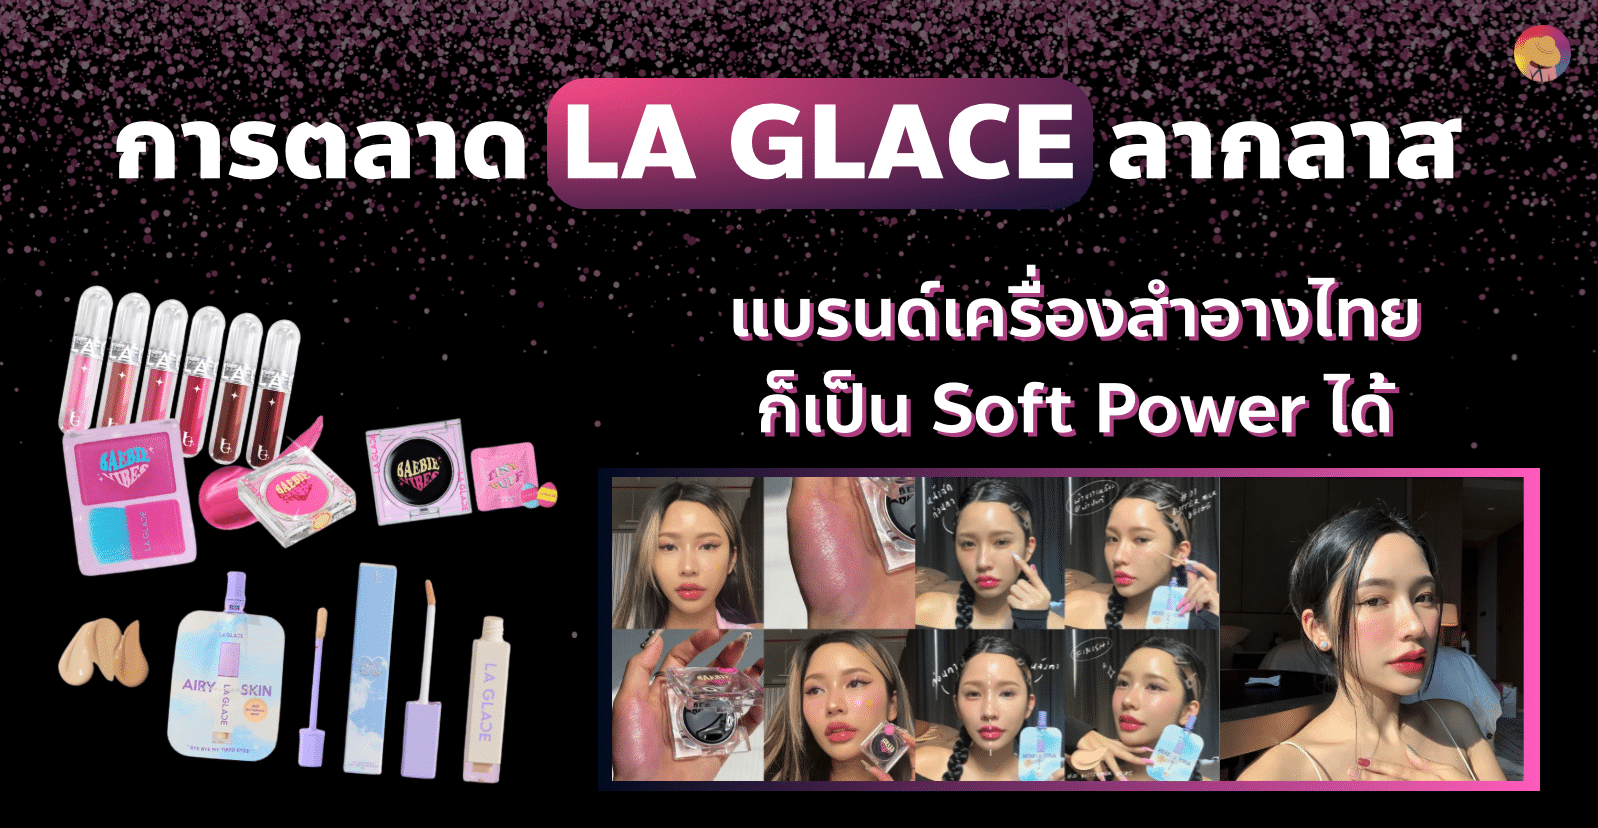 การตลาด LA GLACE ลากลาส 293.3M วิว แบรนด์เครื่องสำอางไทยก็เป็น Soft Power ได้